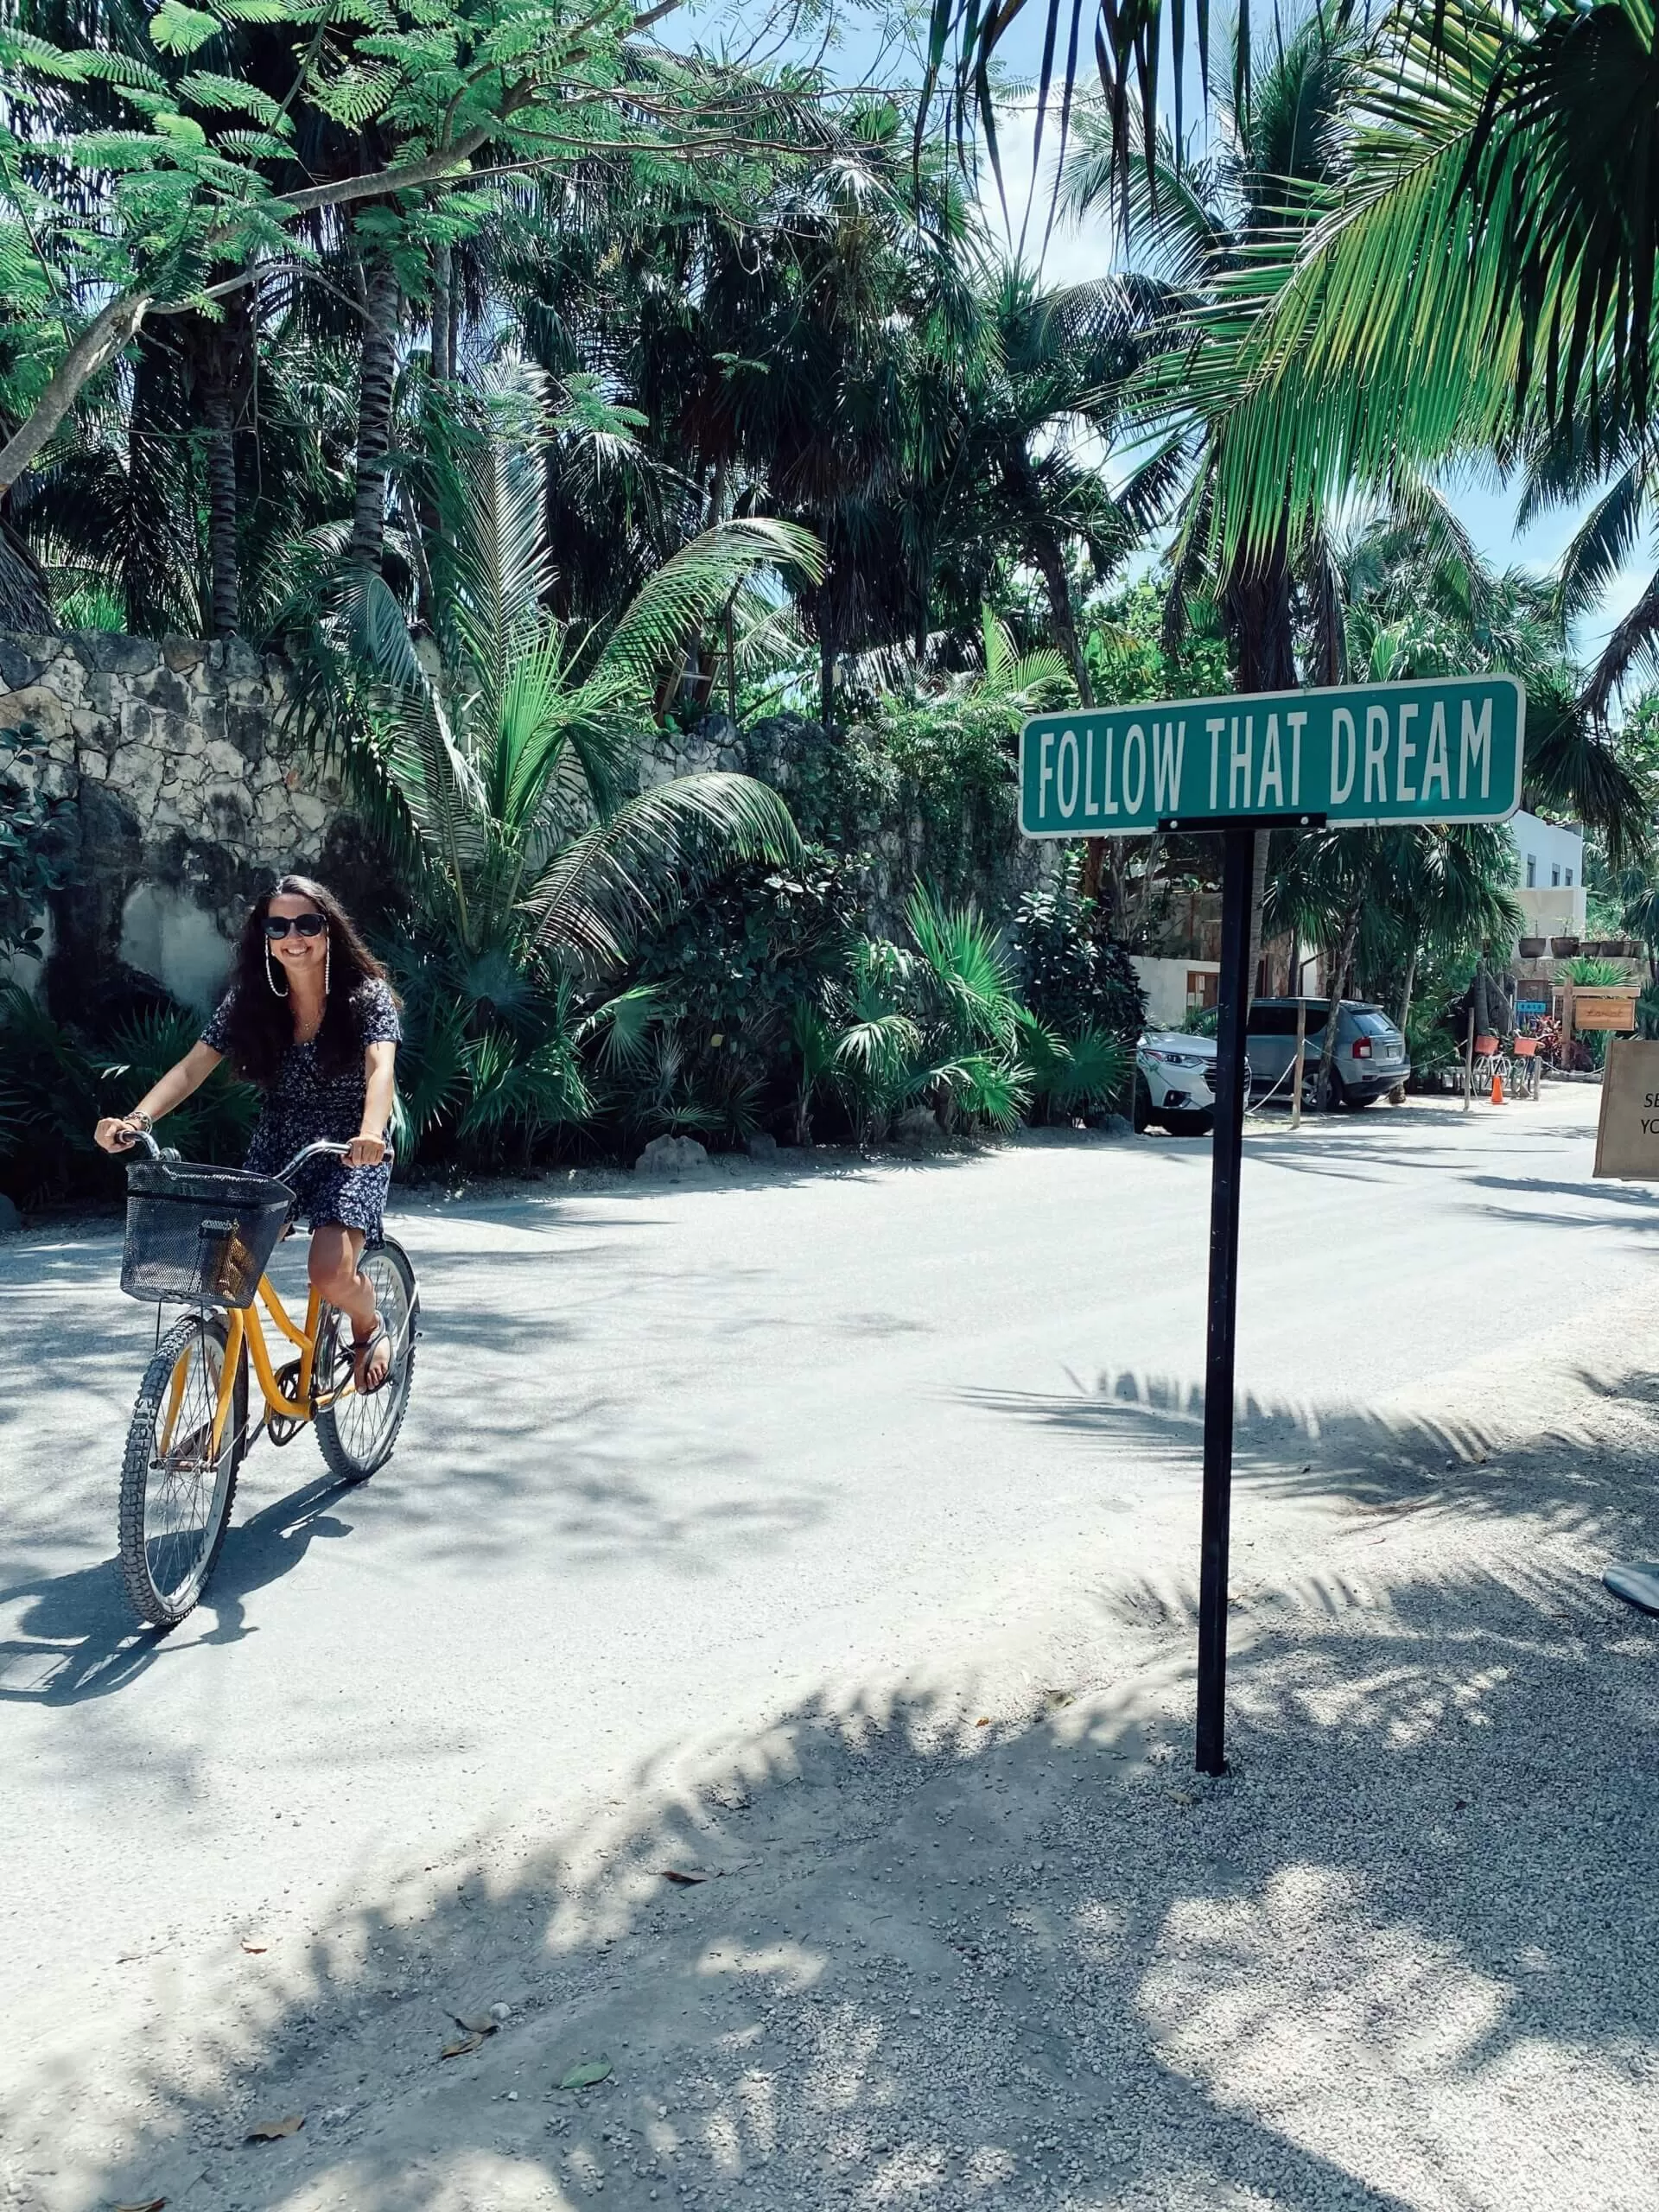 estoy yo andando en bici por las calles de tulum. en la zona hotelera. hay palmeras alrededor y un cartel que dice "follow that dream"